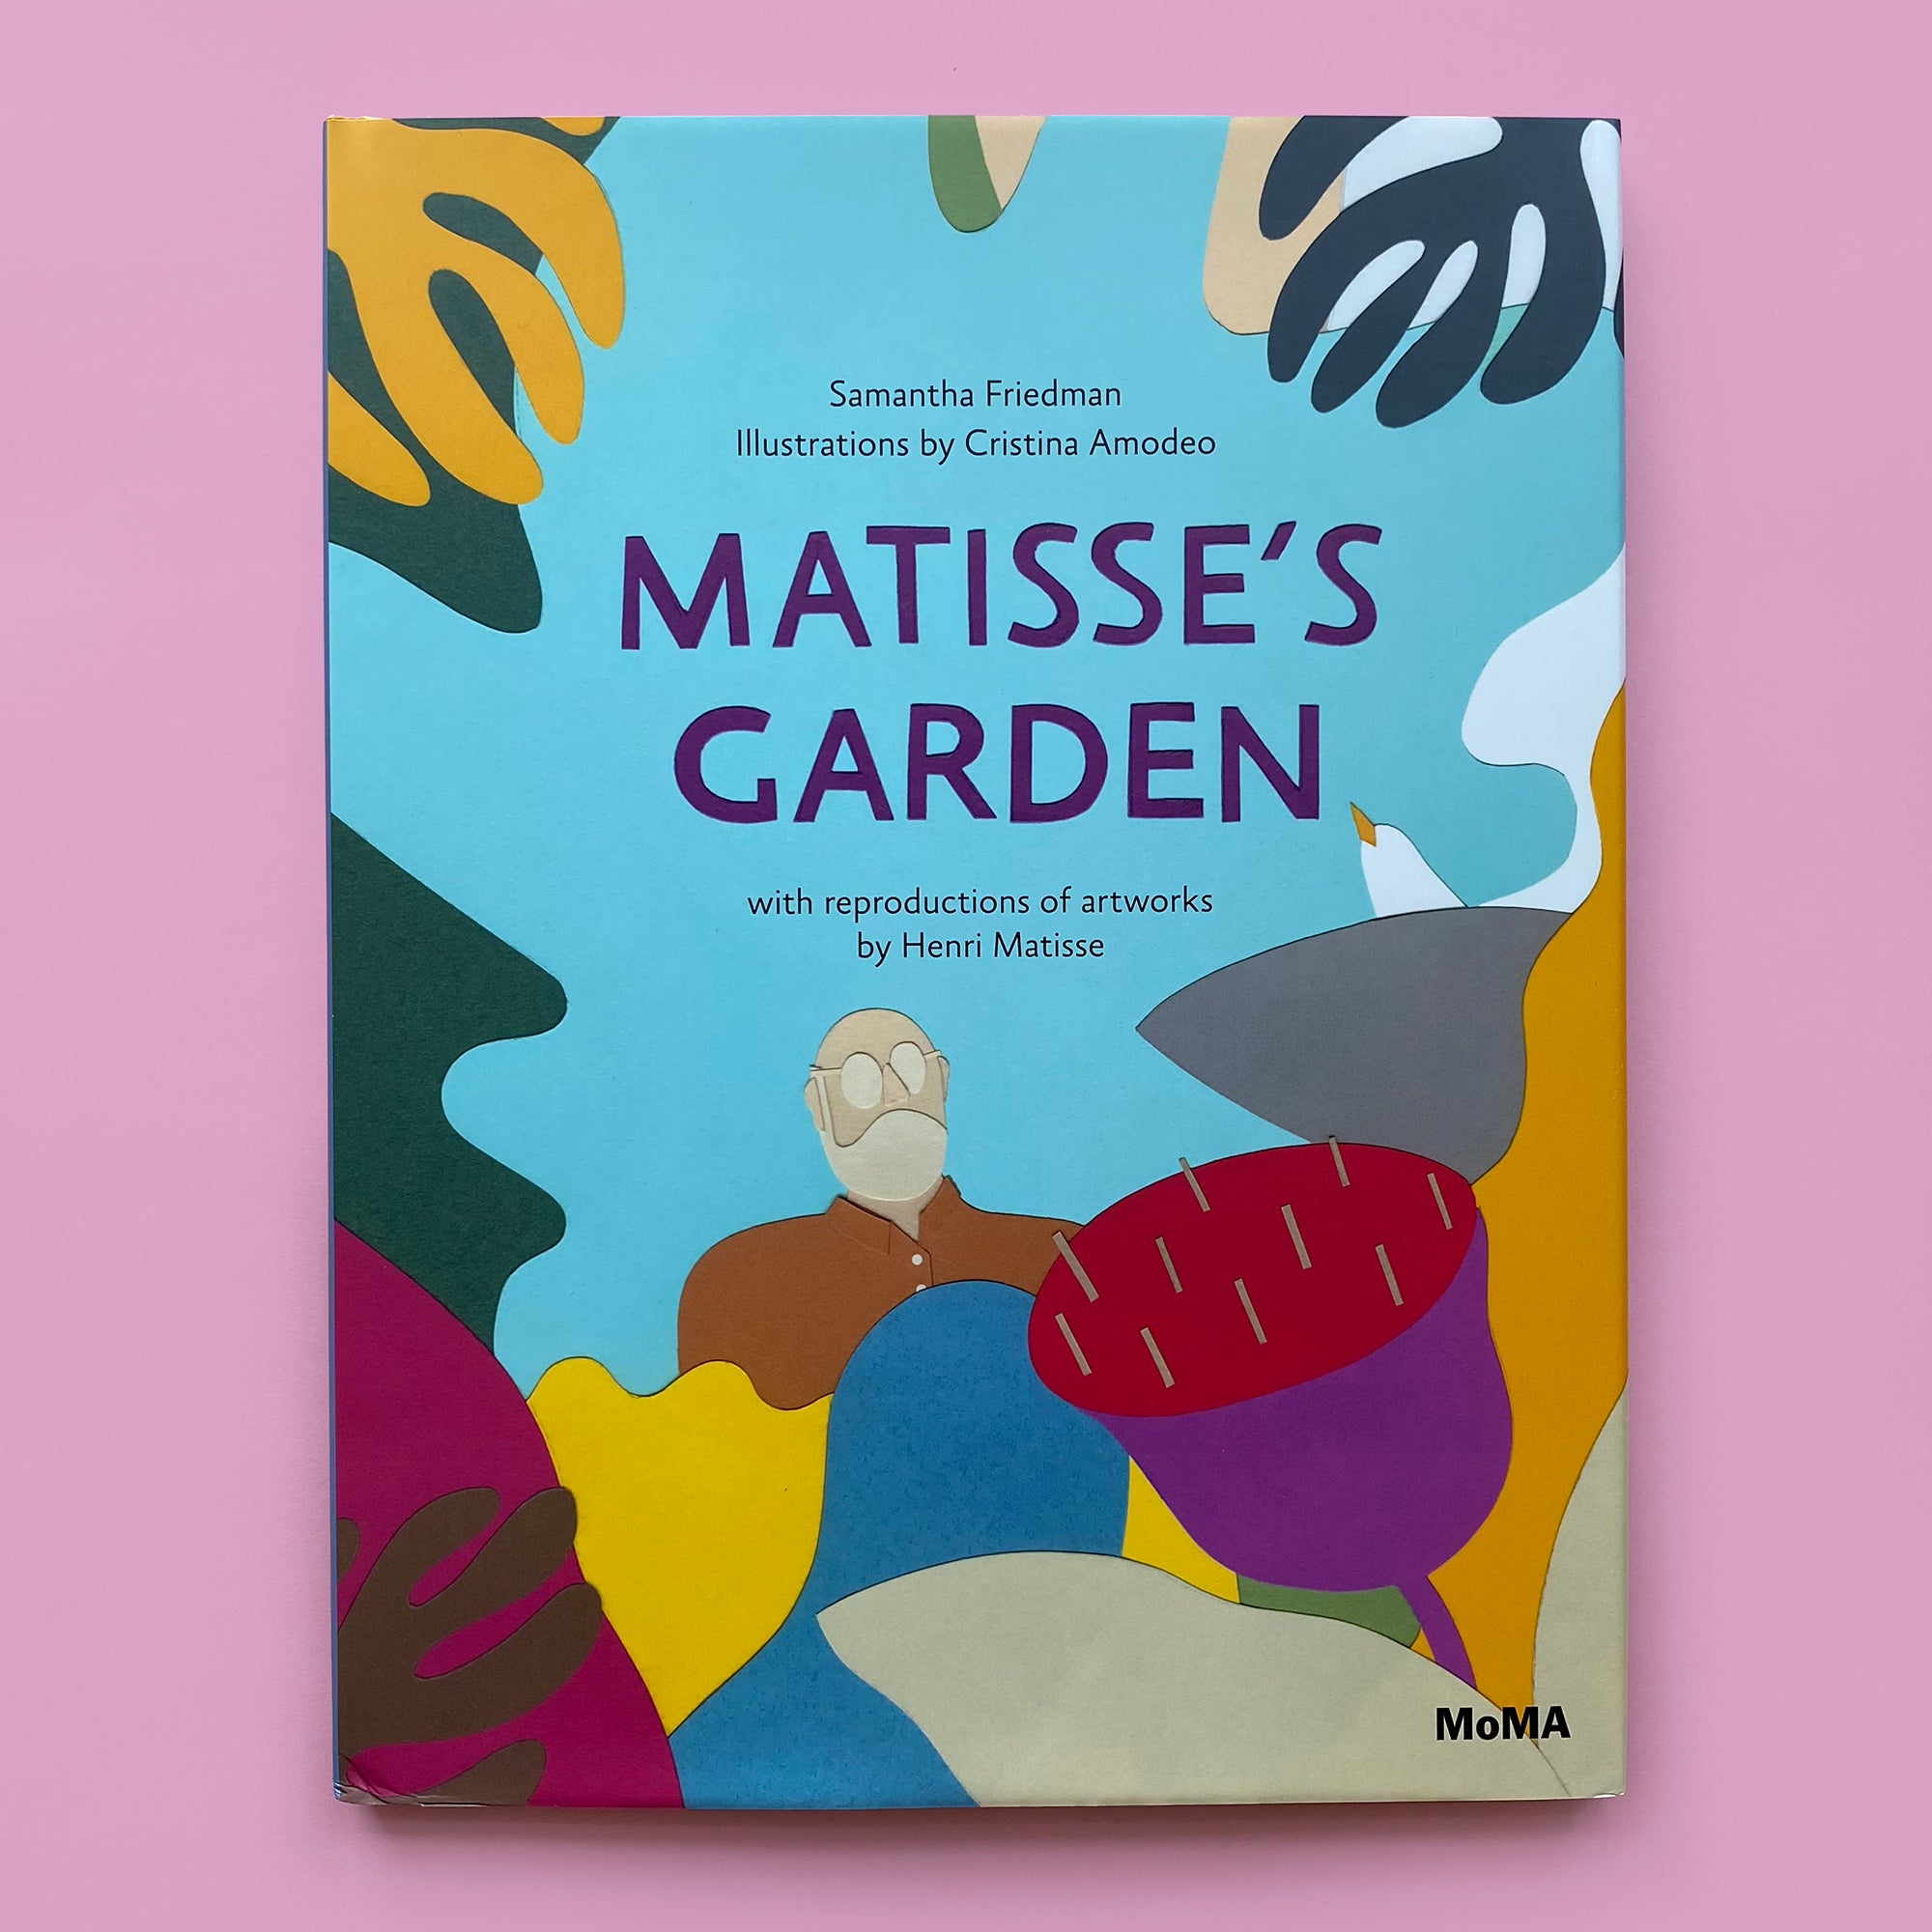 Matisse's Garden